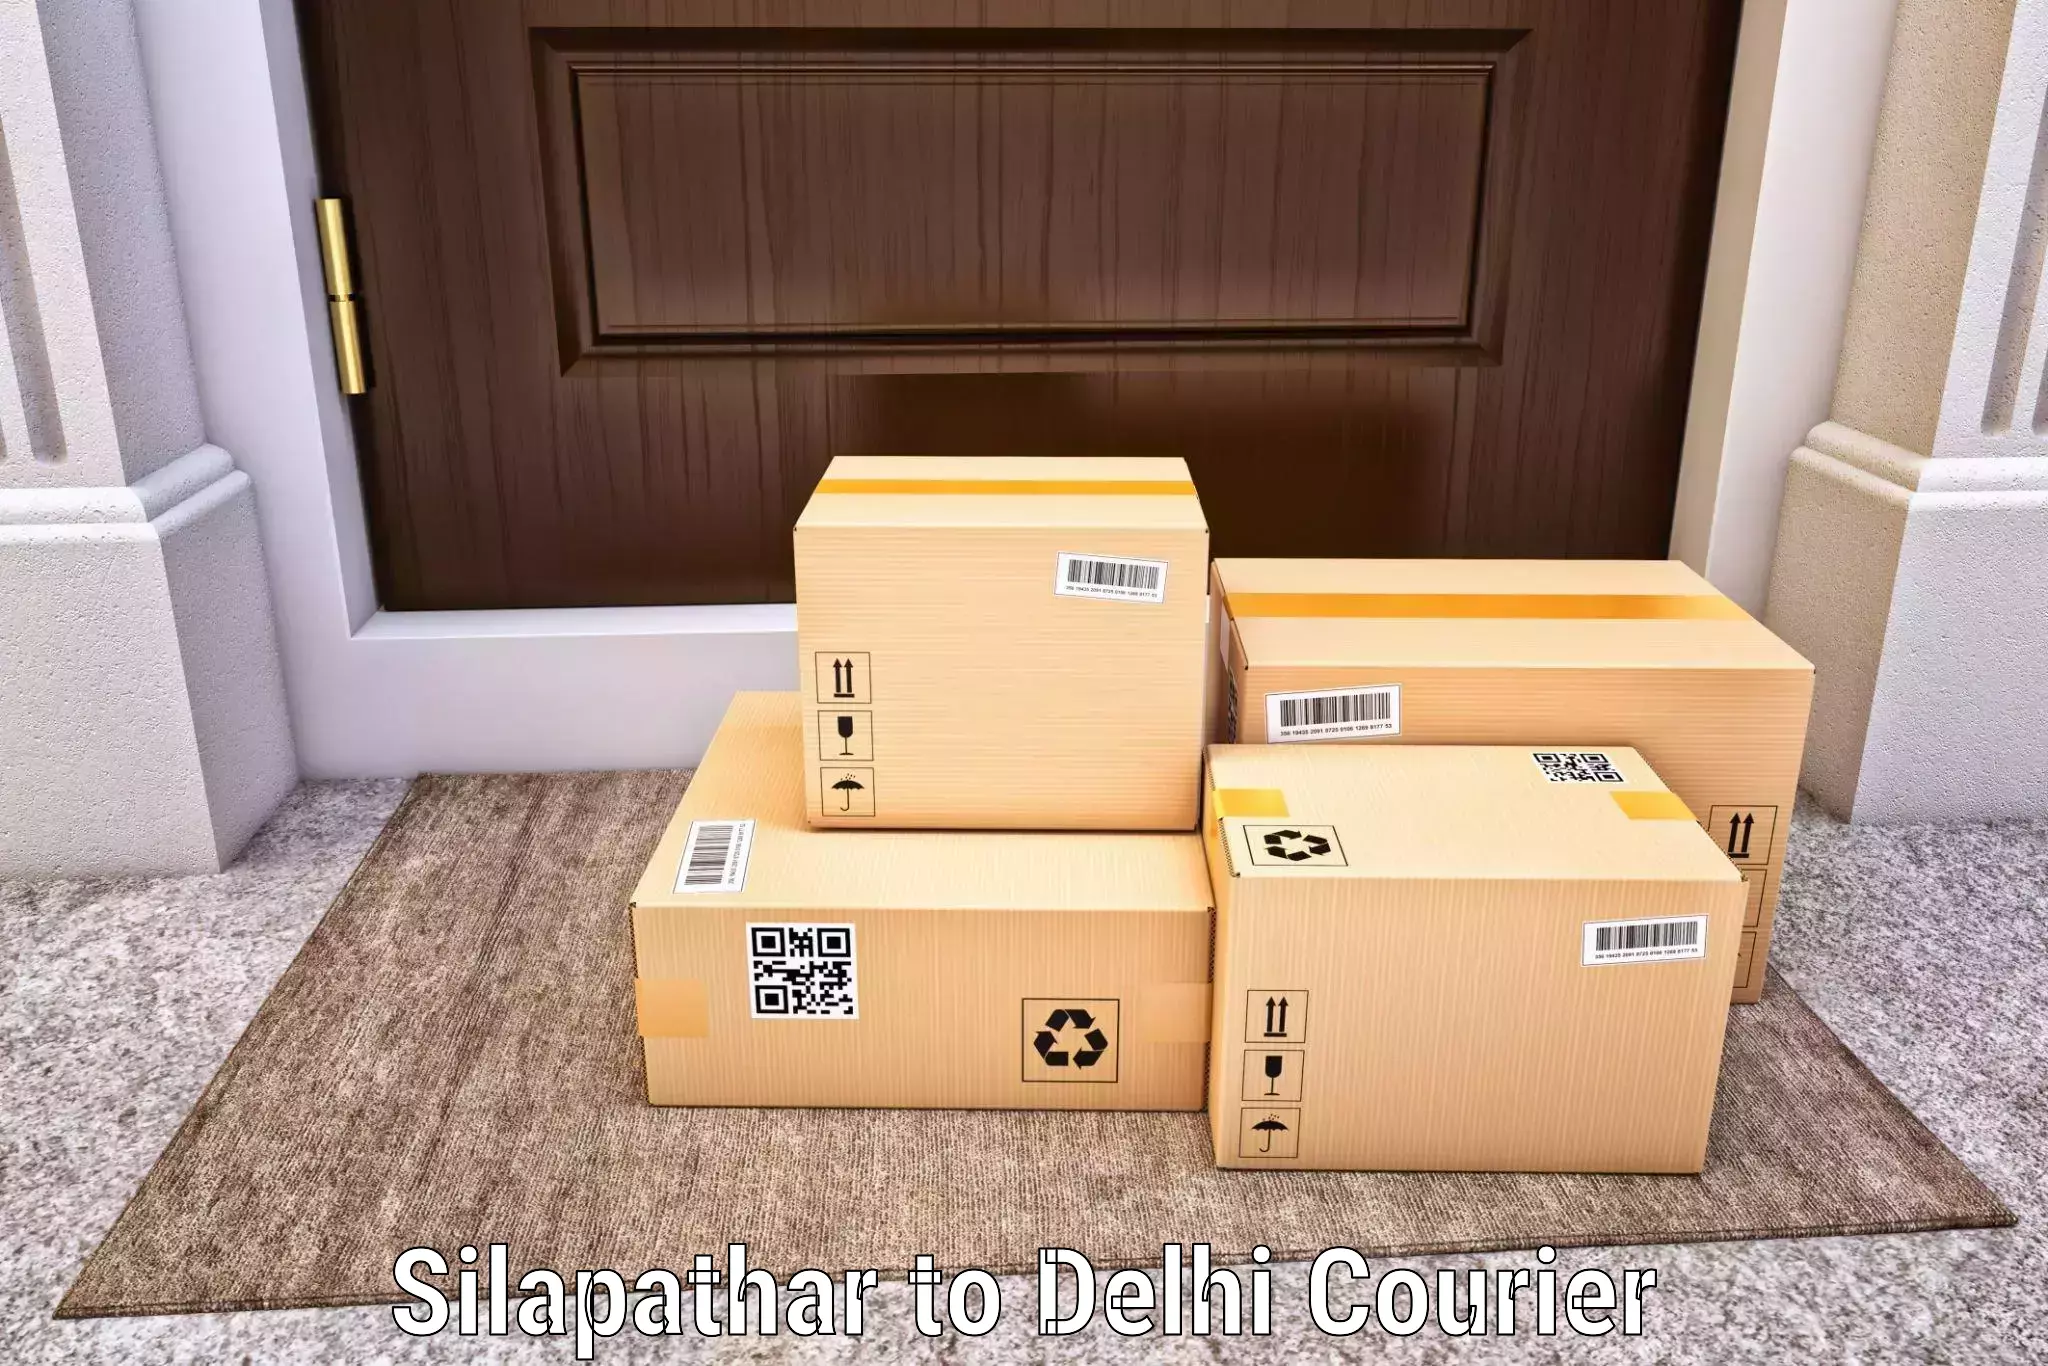 Express mail solutions Silapathar to Ramesh Nagar